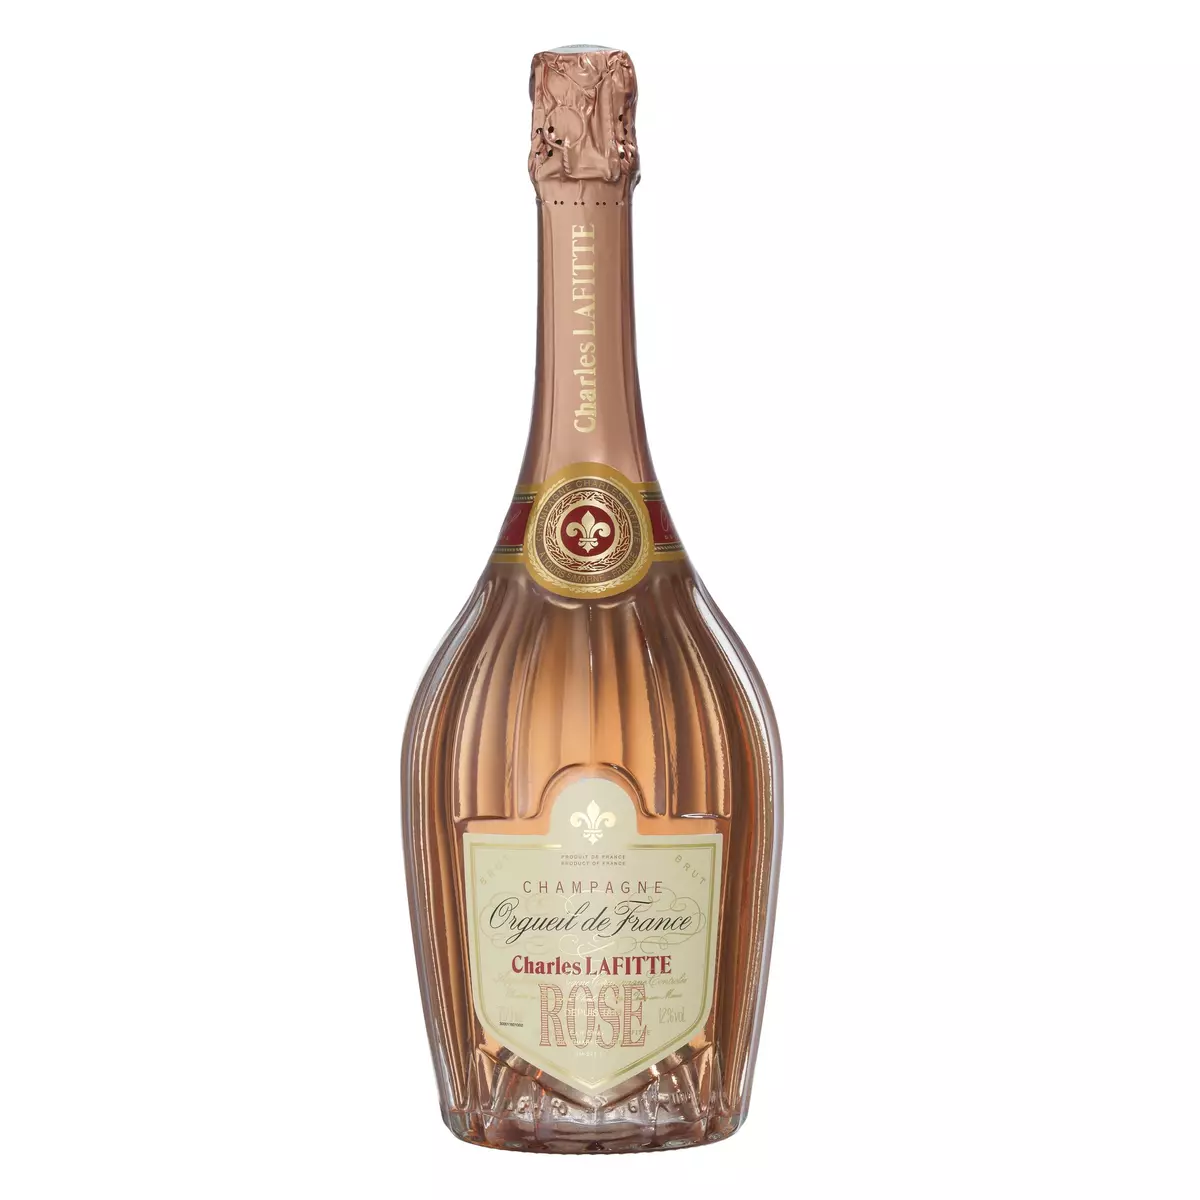 CHARLES LAFITTE AOP Champagne Orgueil de France grande réserve rosé 75cl